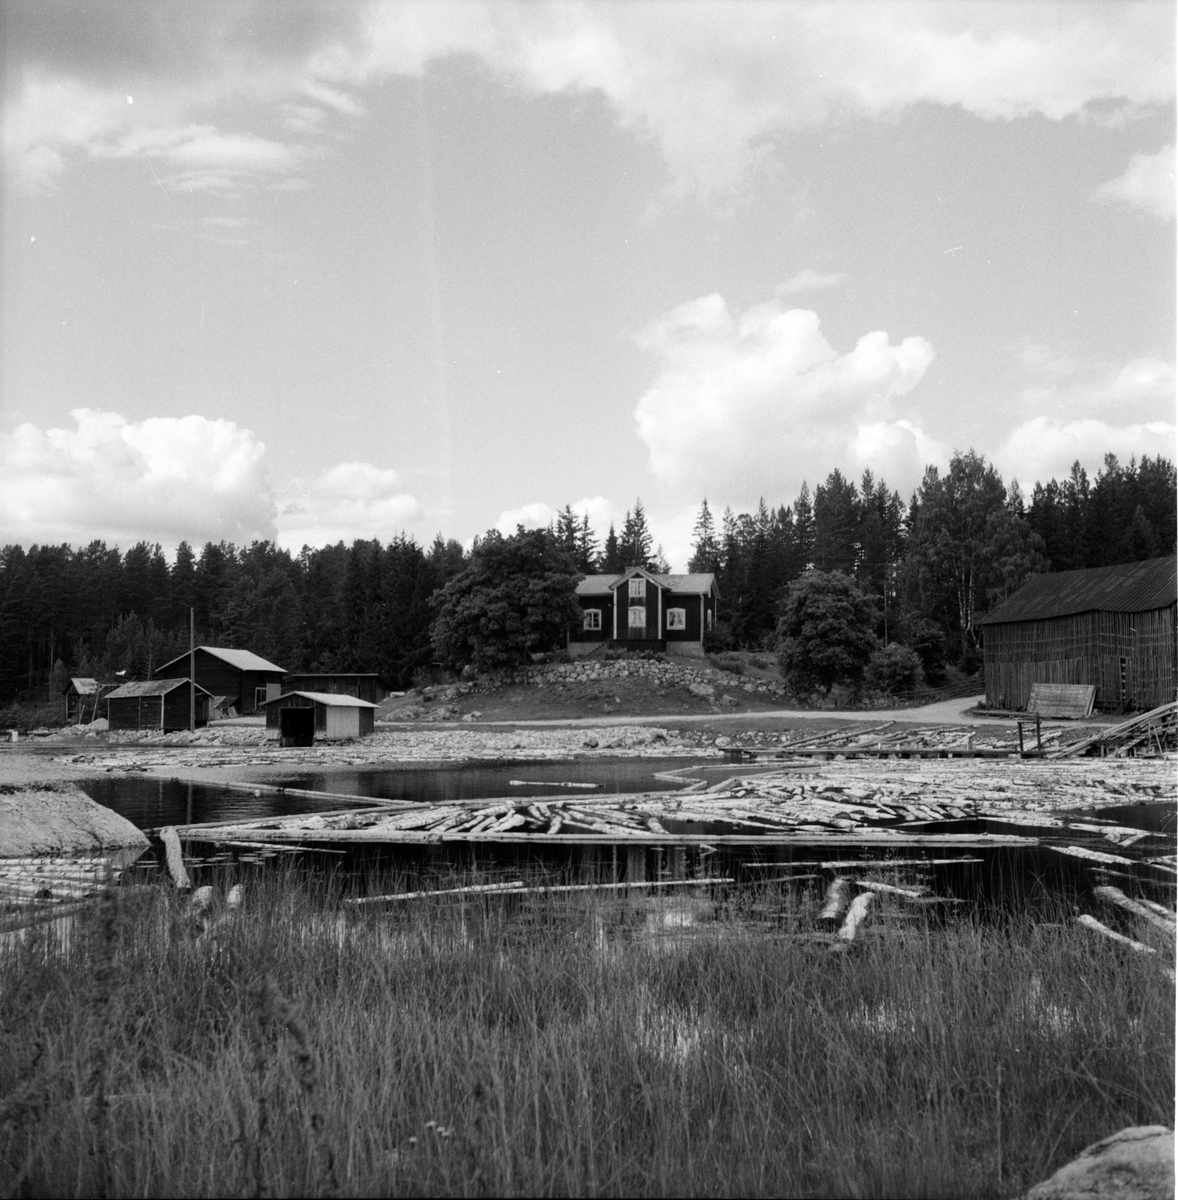 Mållångstad,
Gullberg,
Konsum,
20 Juli 1960